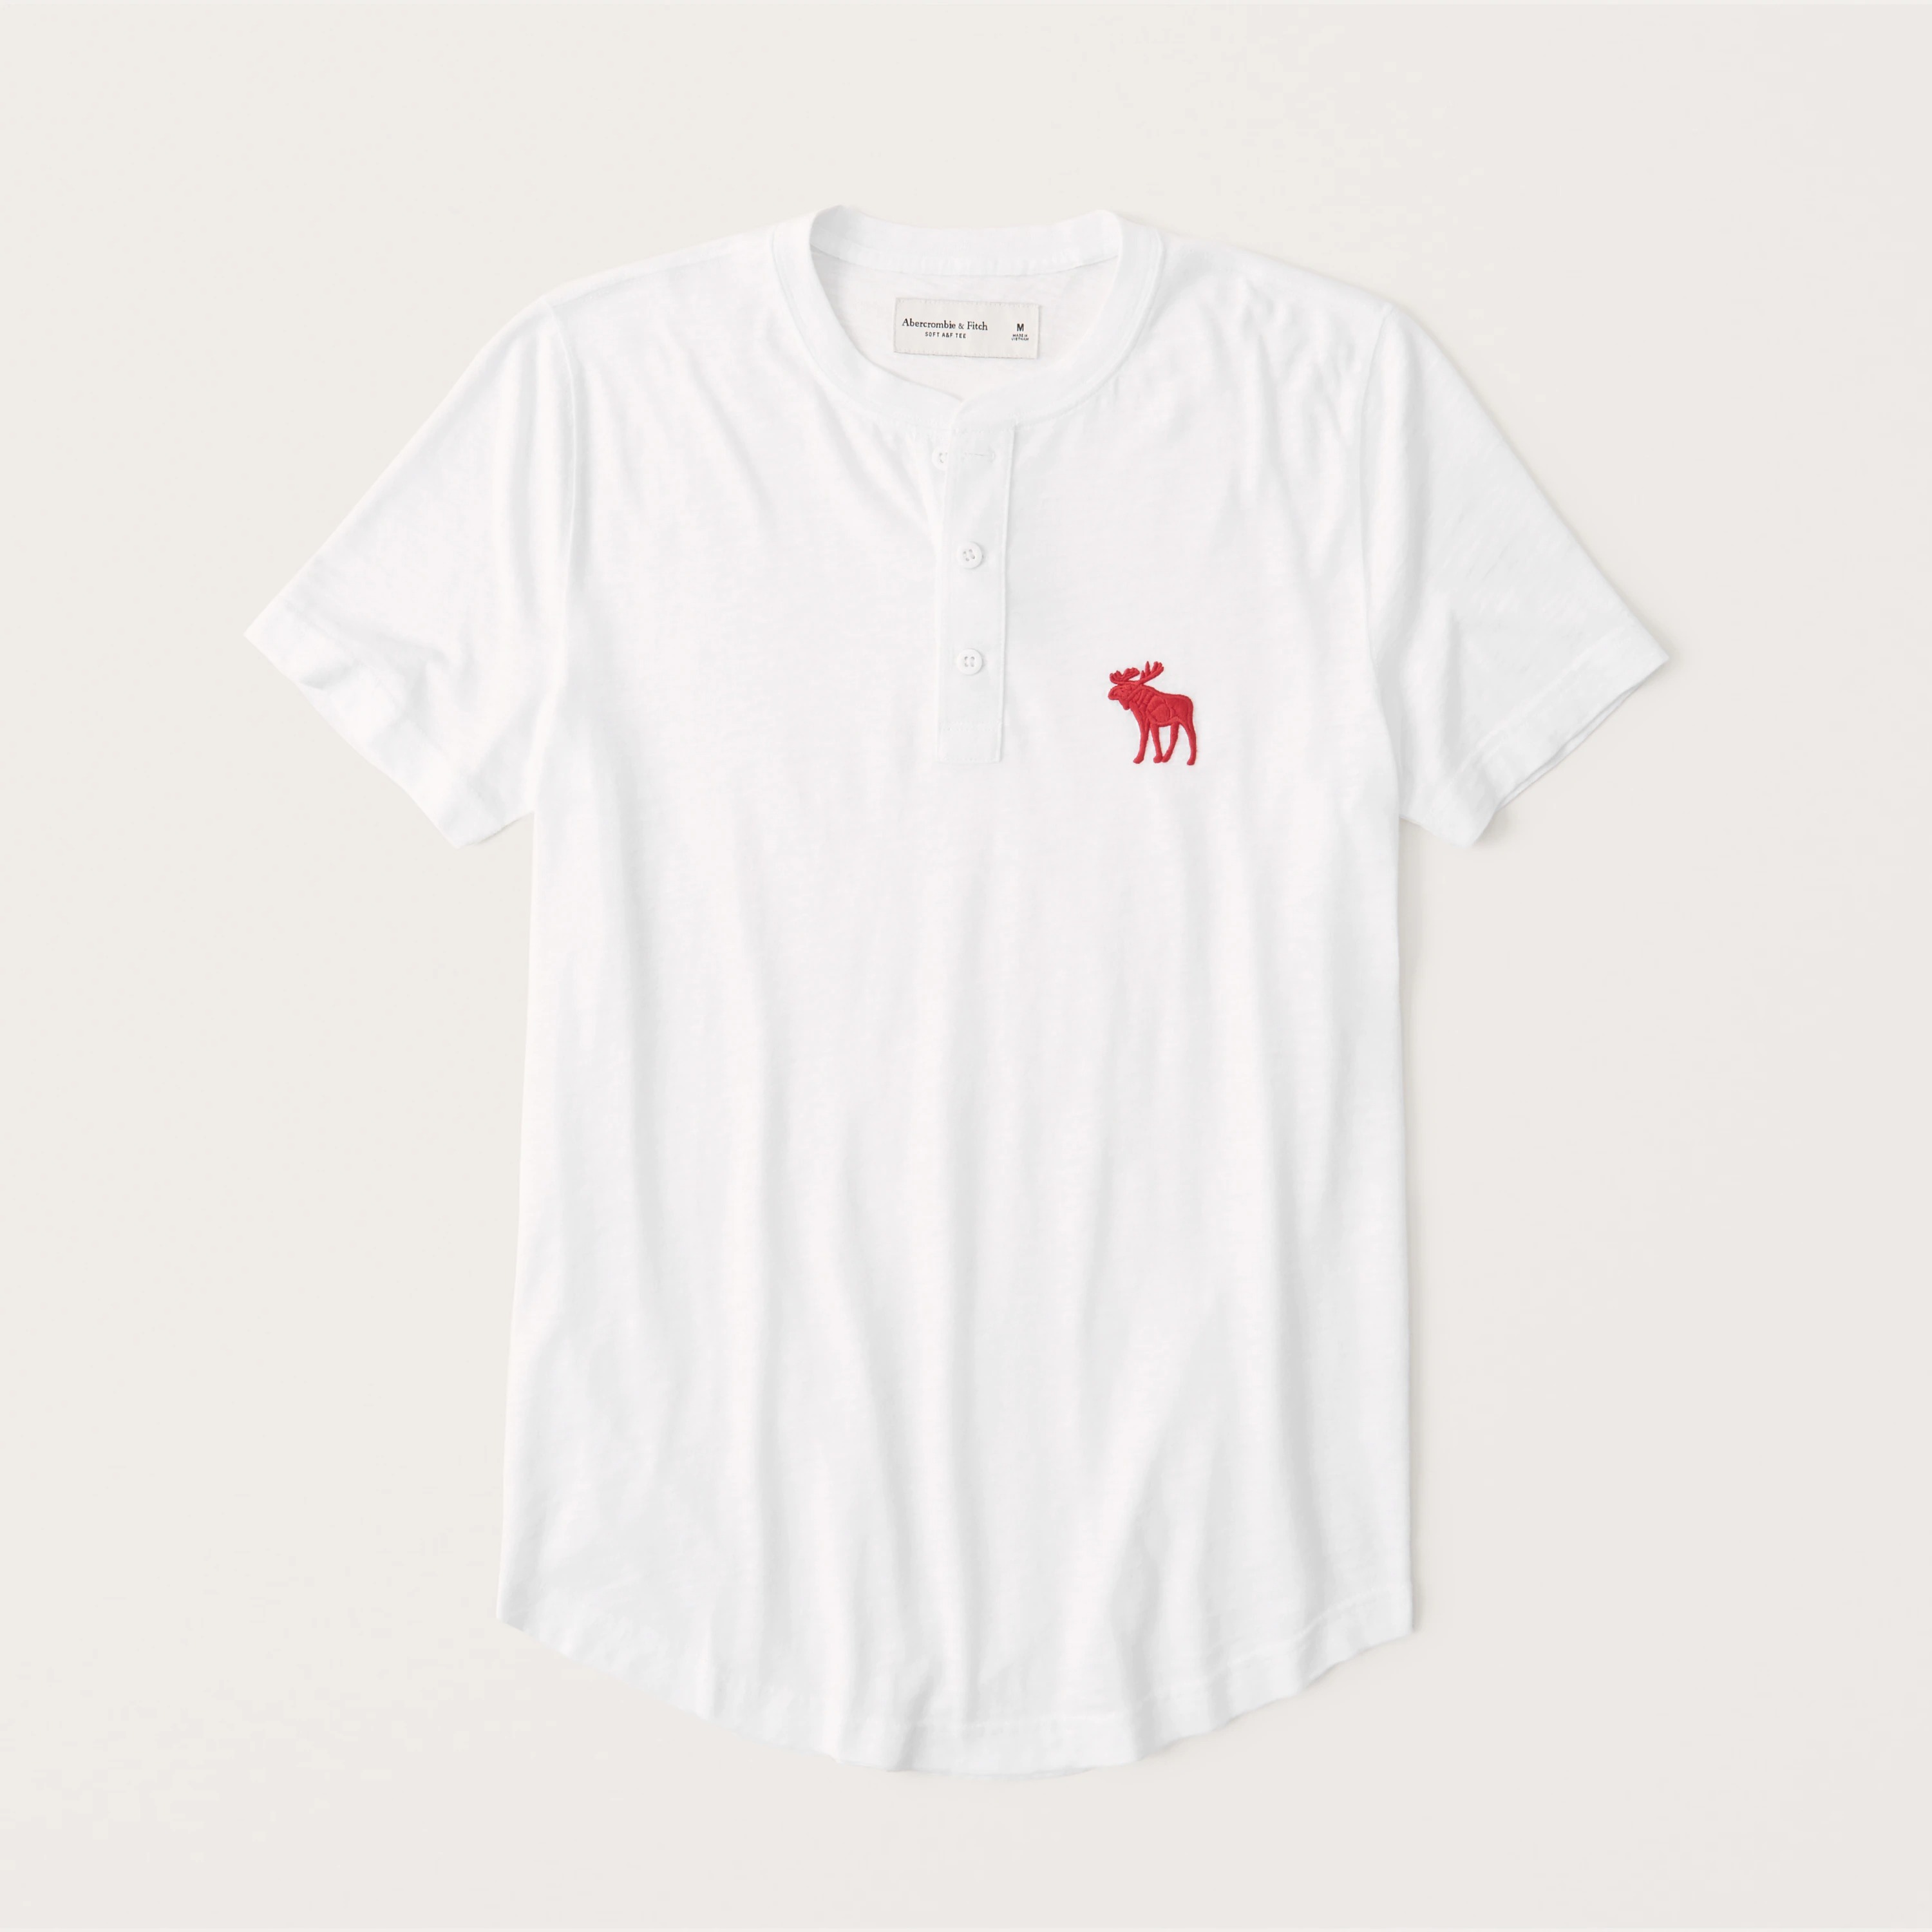 アバクロンビー&フィッチ Tシャツ メンズ 【5/17 13時~エントリーでP20倍】 Abercrombie＆Fitch 正規品 (アバクロンビー＆フィッチ) ビックムース ヘンリーネック半袖Tシャツ (Short-Sleeve Exploded Icon Henley) メンズ (White) 新品 (softA&F)